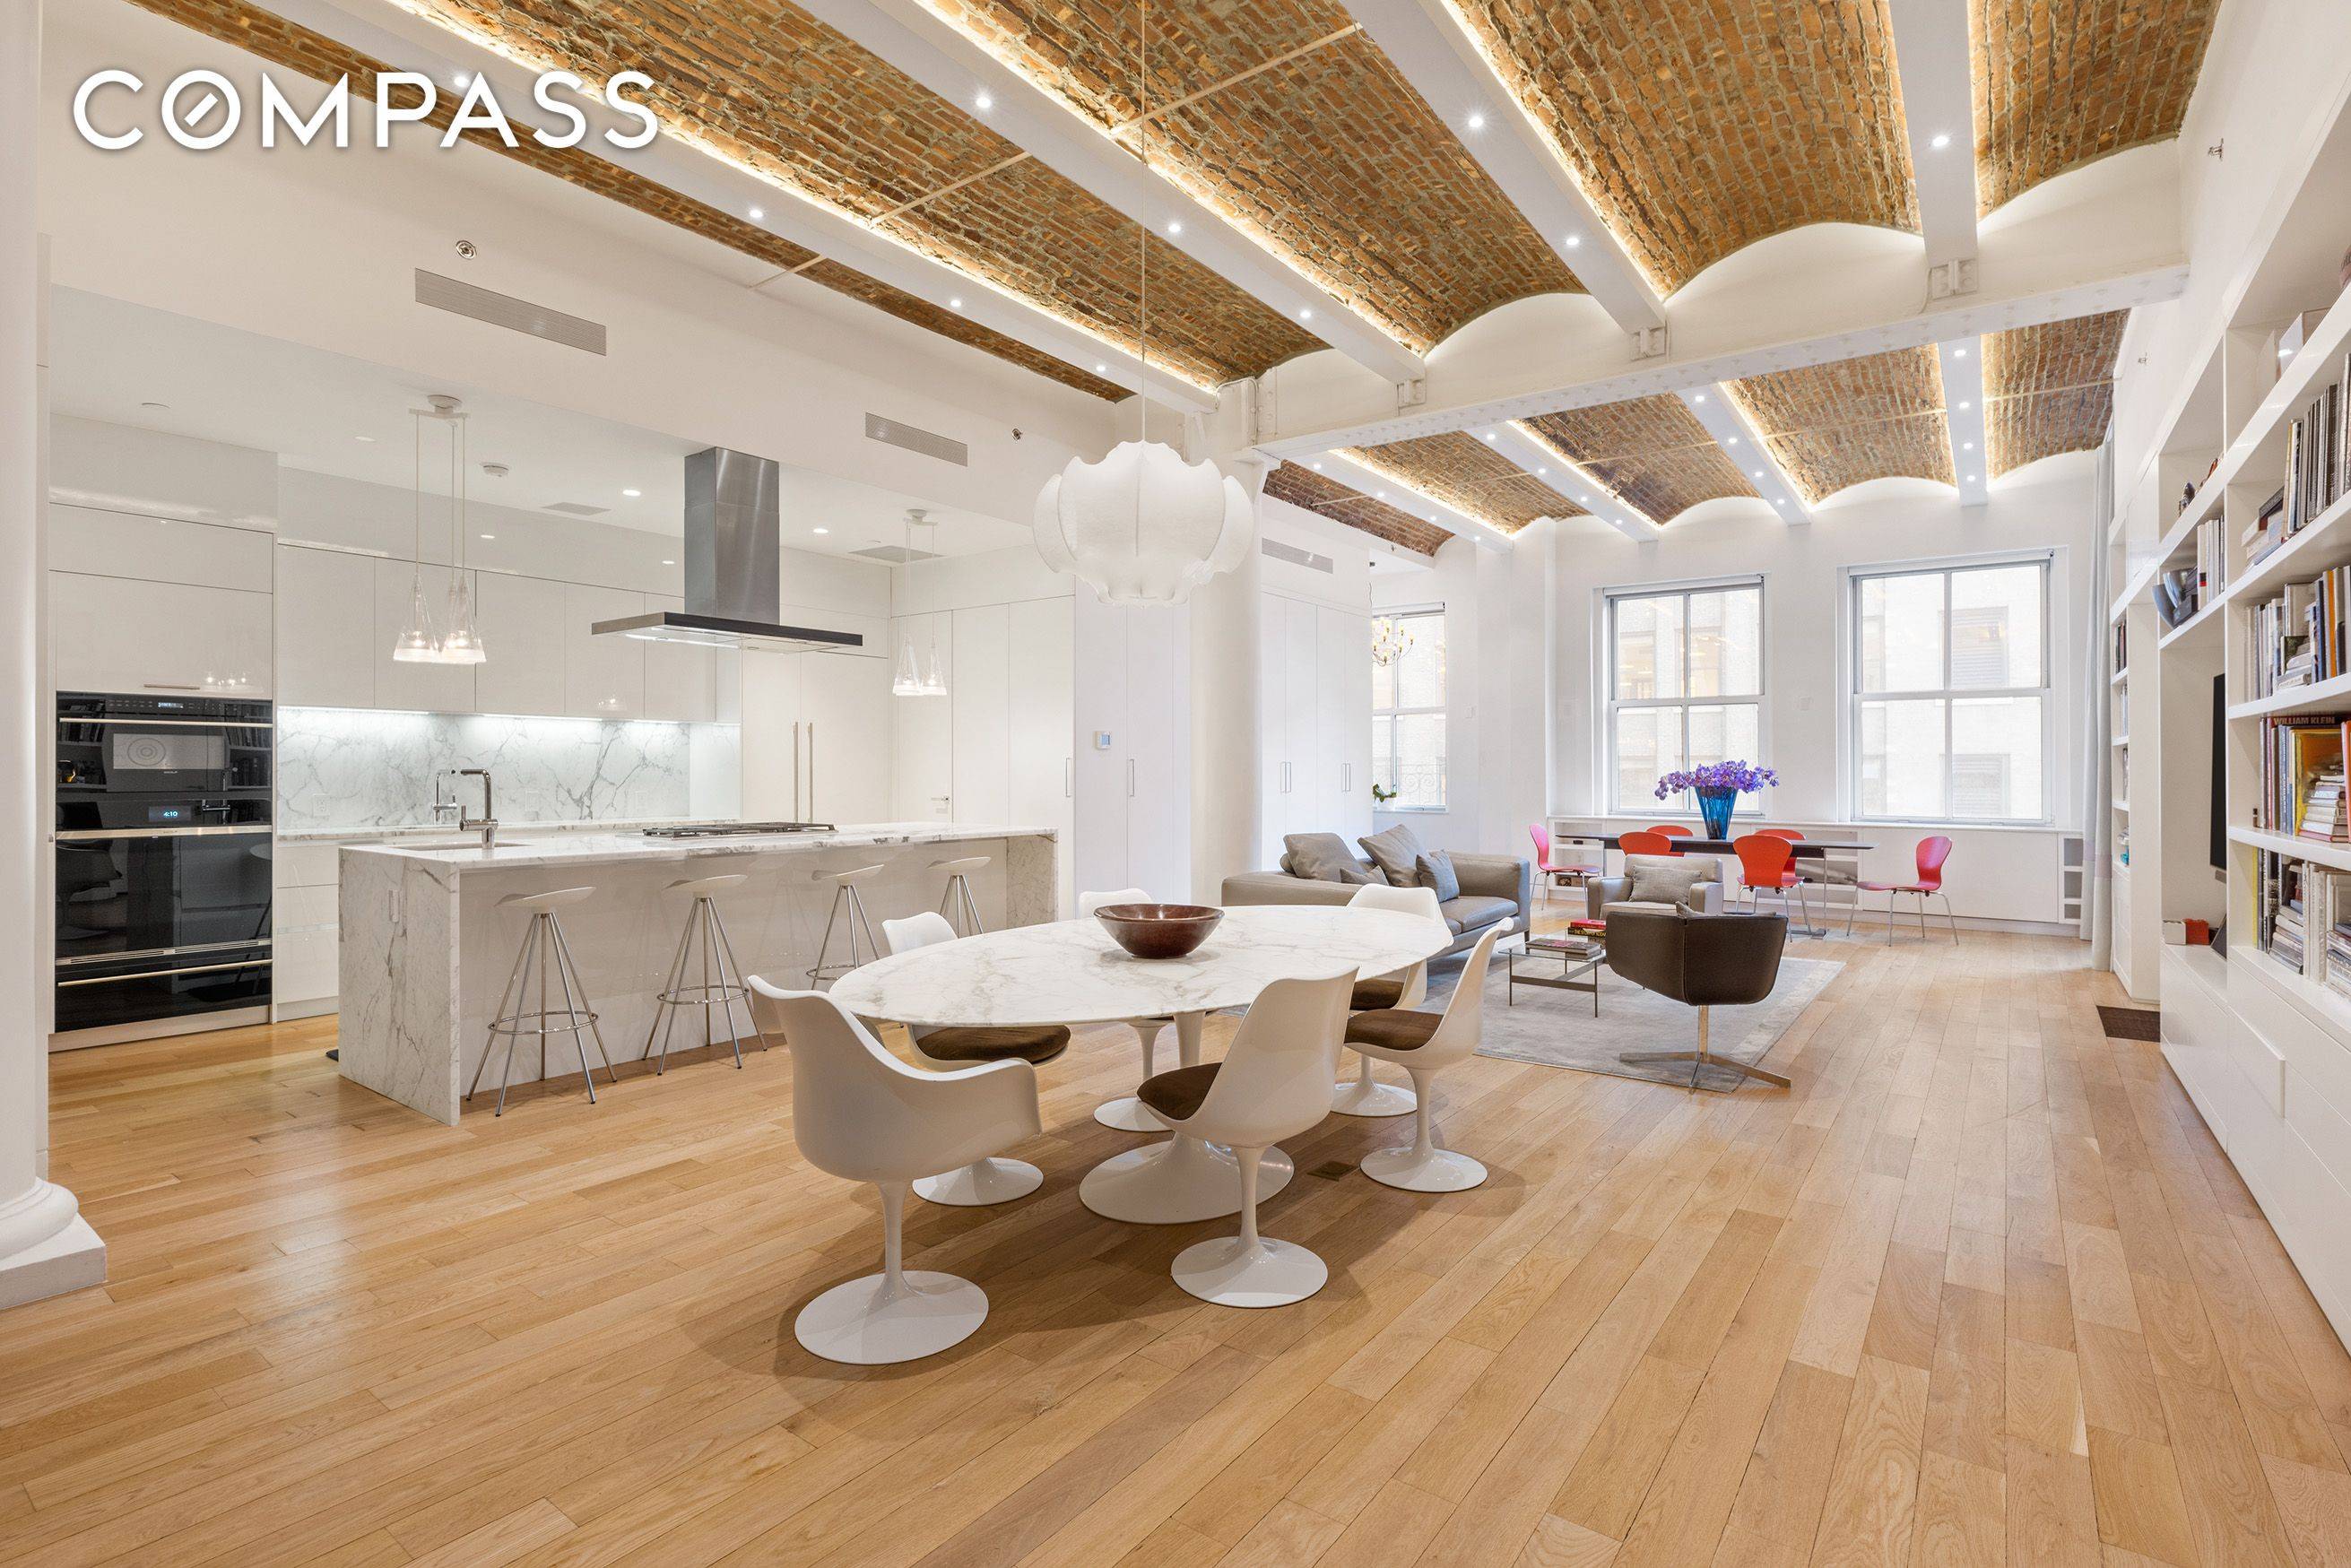 This elegant 3, 163 sq ft Tribeca loft offers a 3 bedroom, 3.